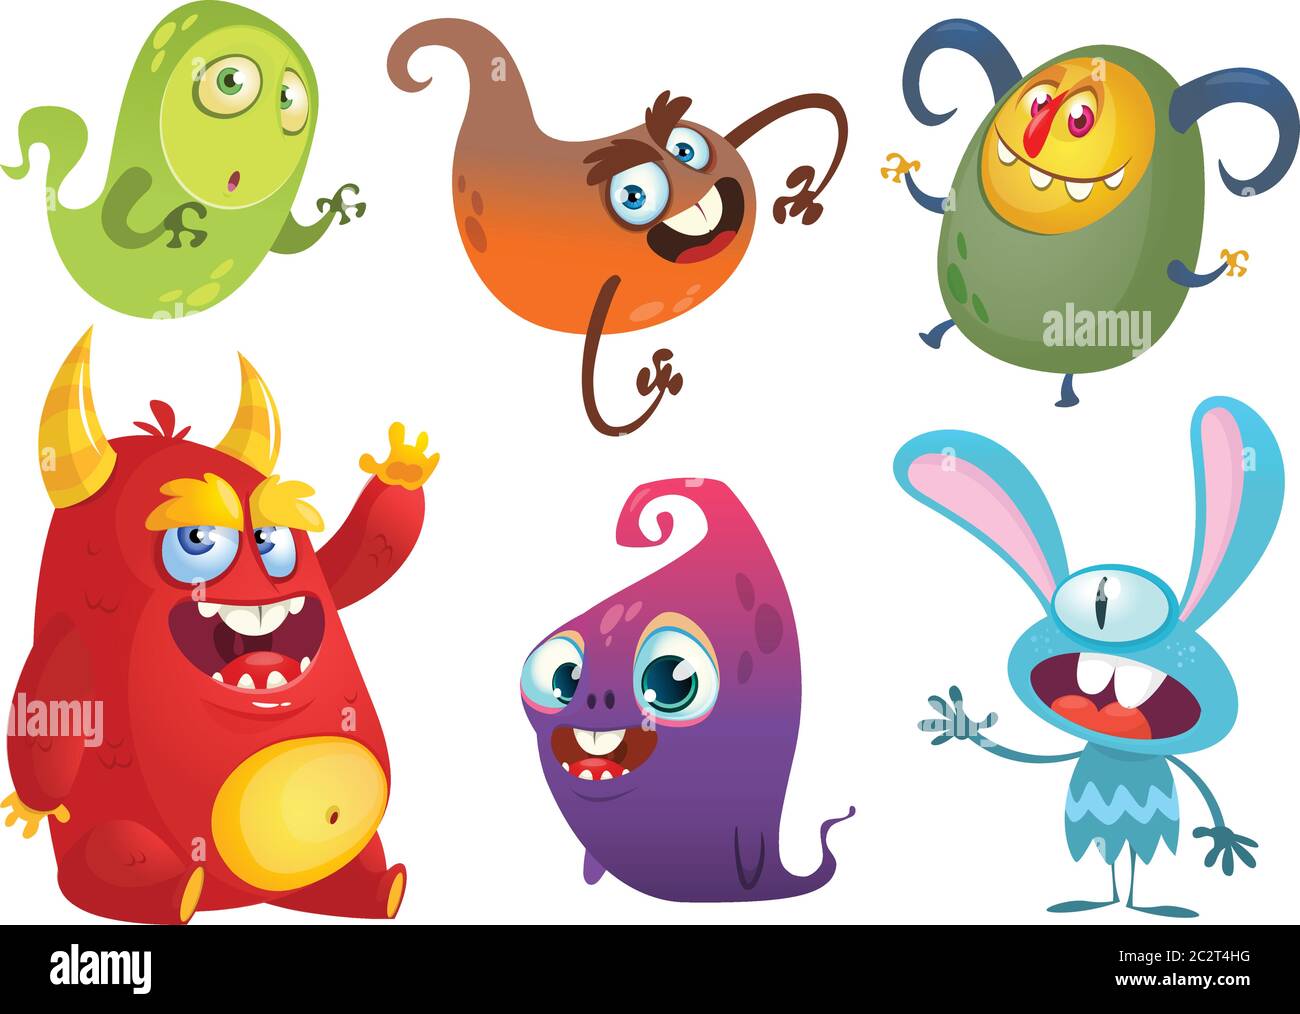 Funny cartoon monsters set. Halloween design Stock Vector Image & Art